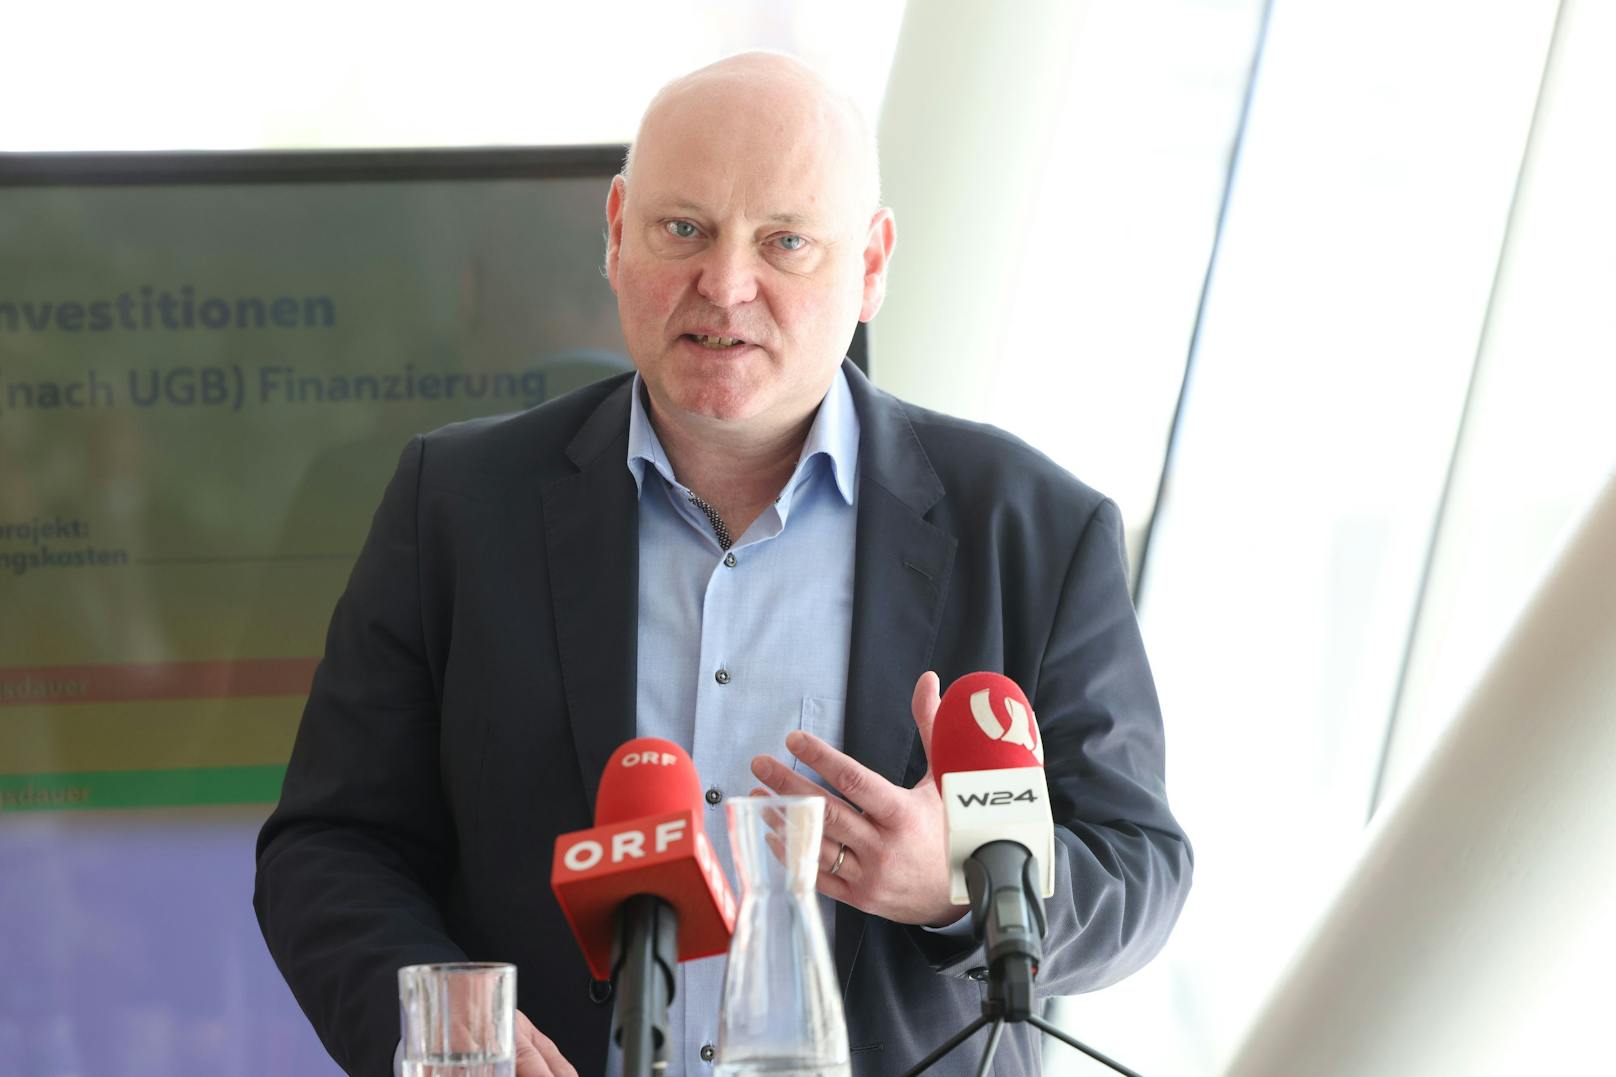 Professor Achim Truger plädiert an der Seite von Wiens Finanzstadtrat Peter Hanke (SPÖ) für modernere EU-Fiskalregeln.